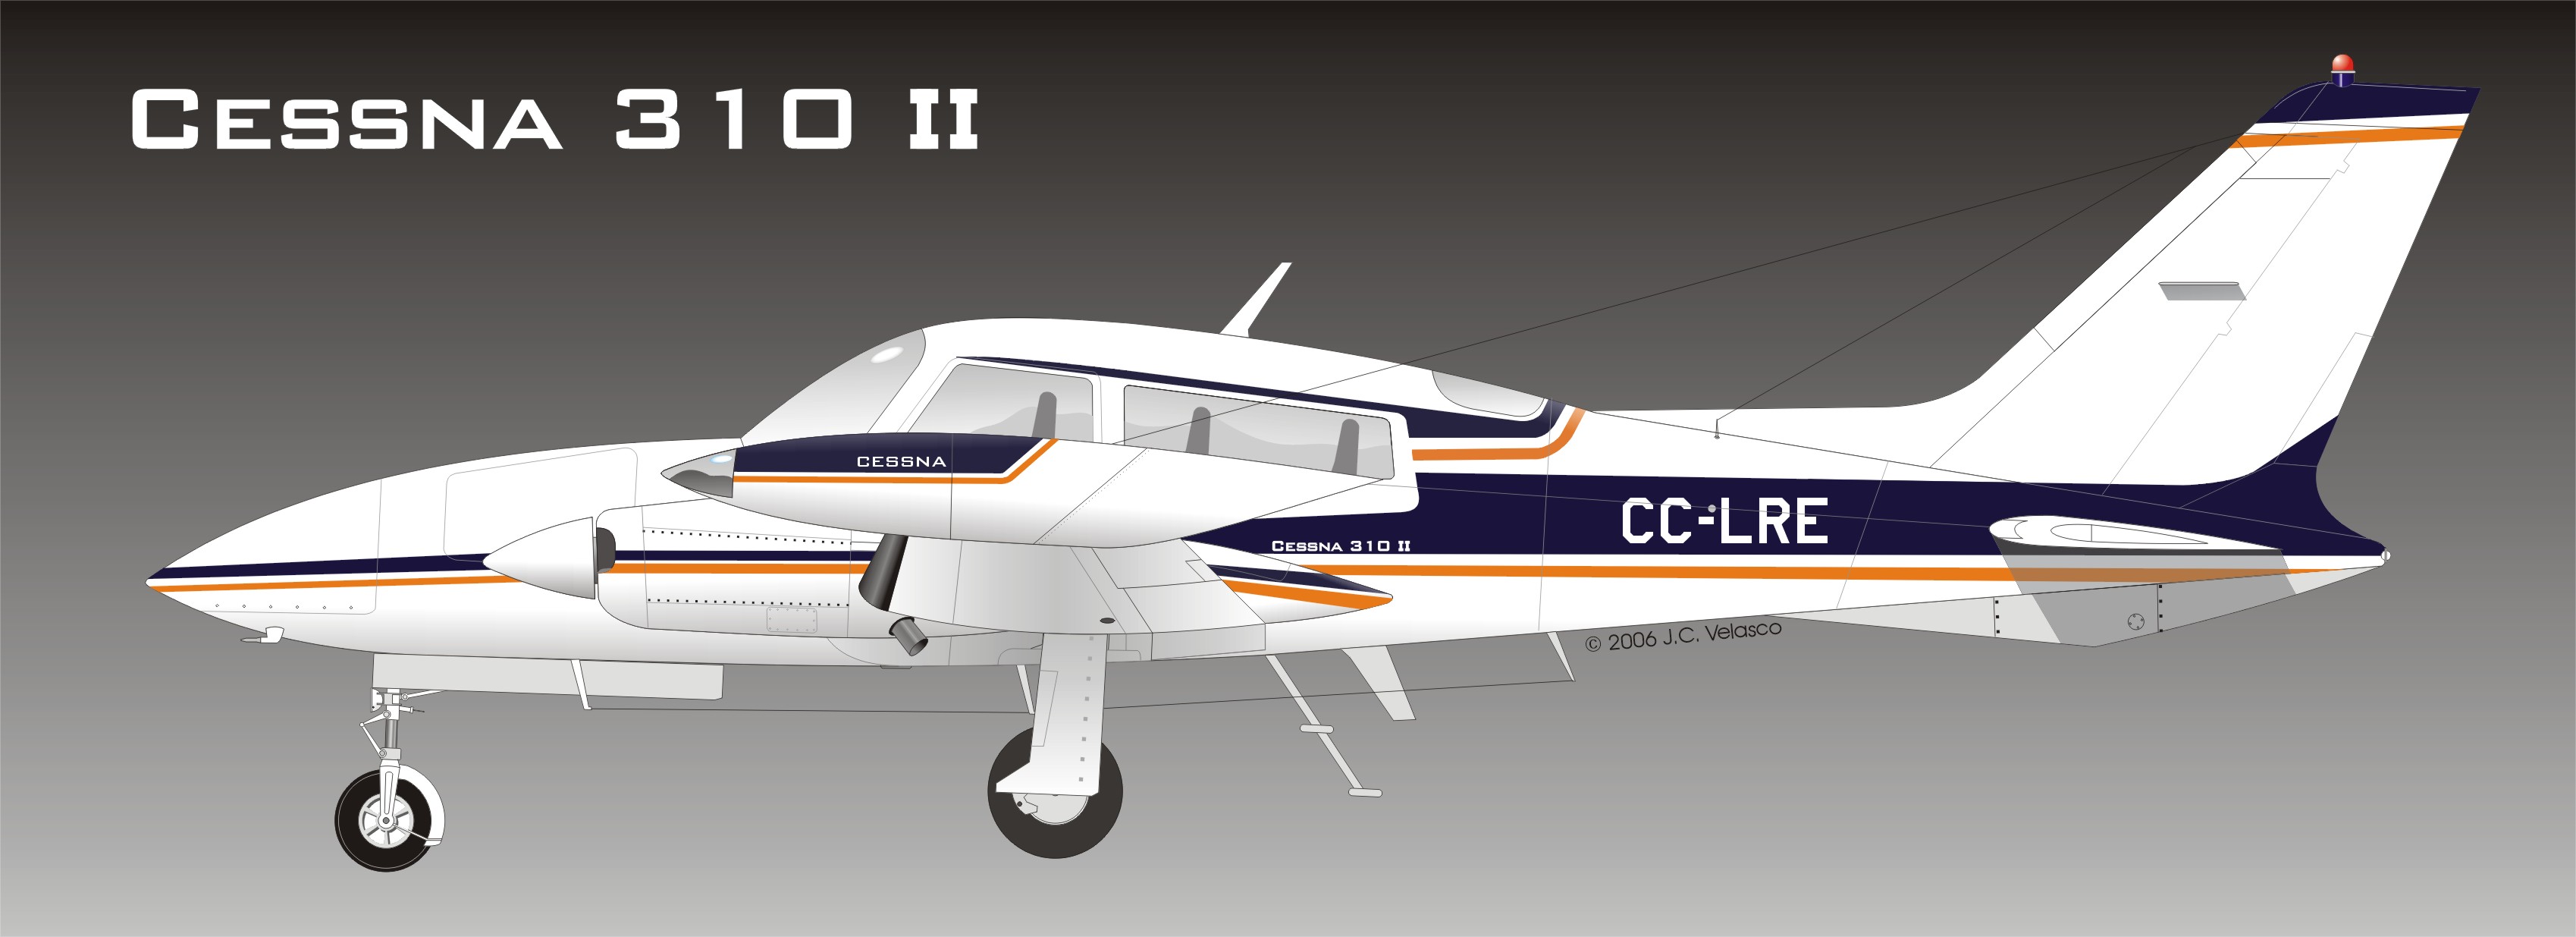 Cessna 310/320 previous